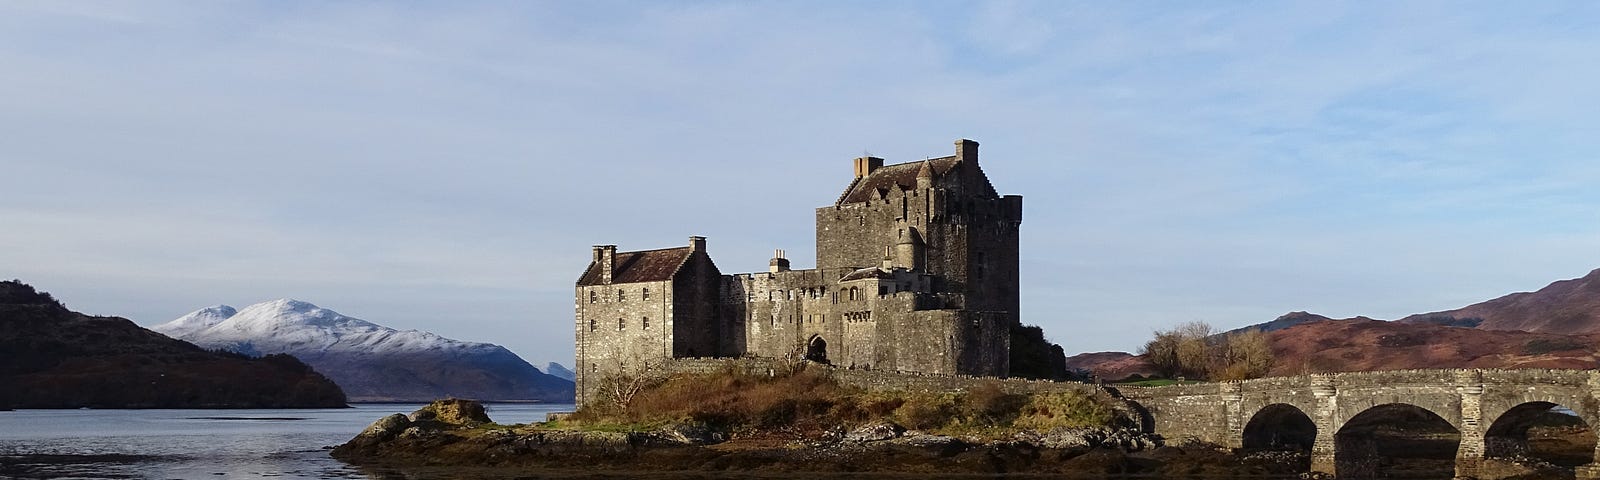 A Scottish castle